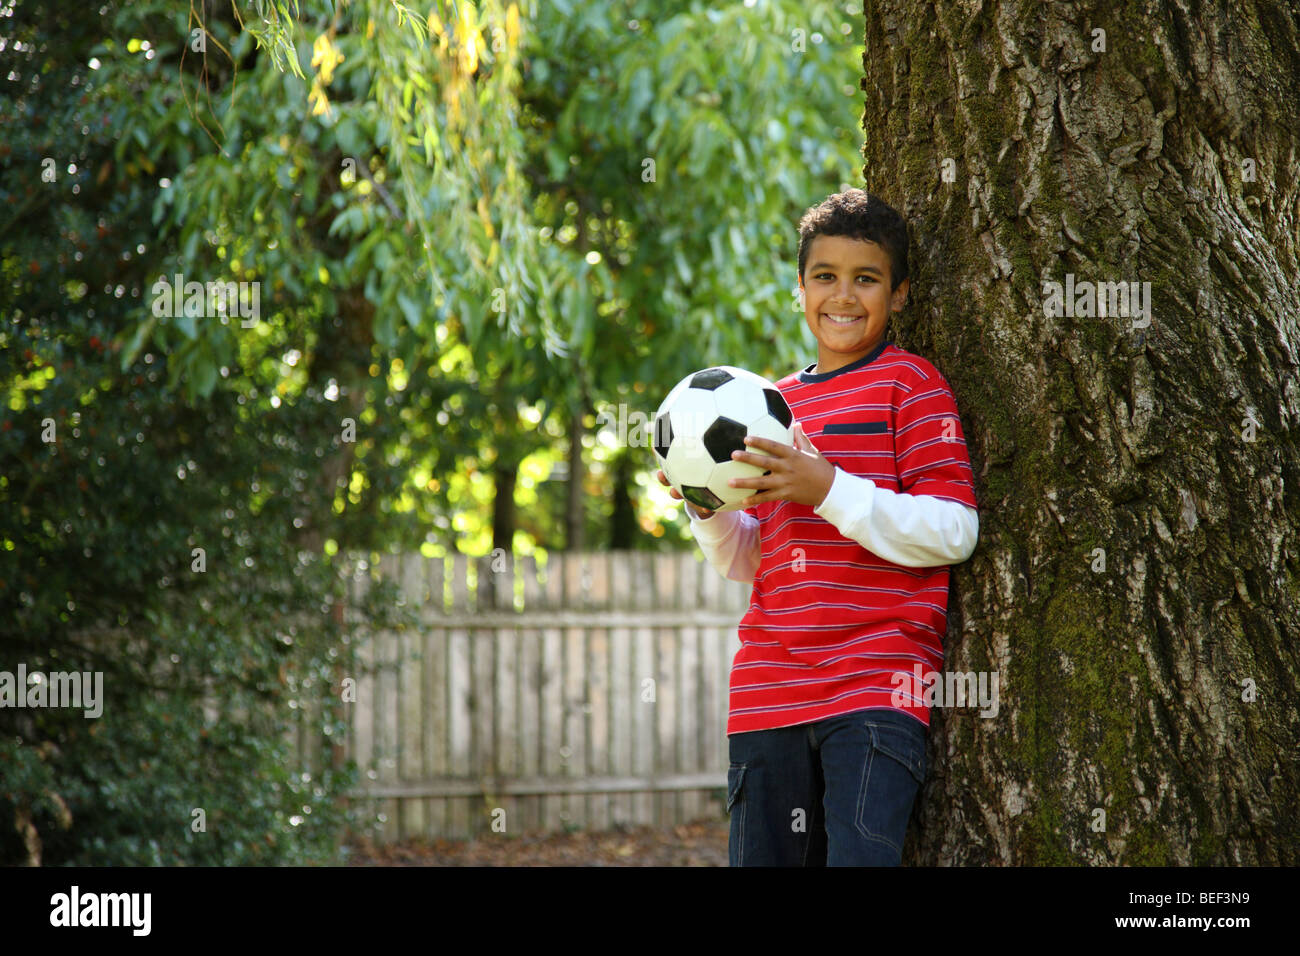 Retrato de niño en el exterior con balón de fútbol Foto de stock